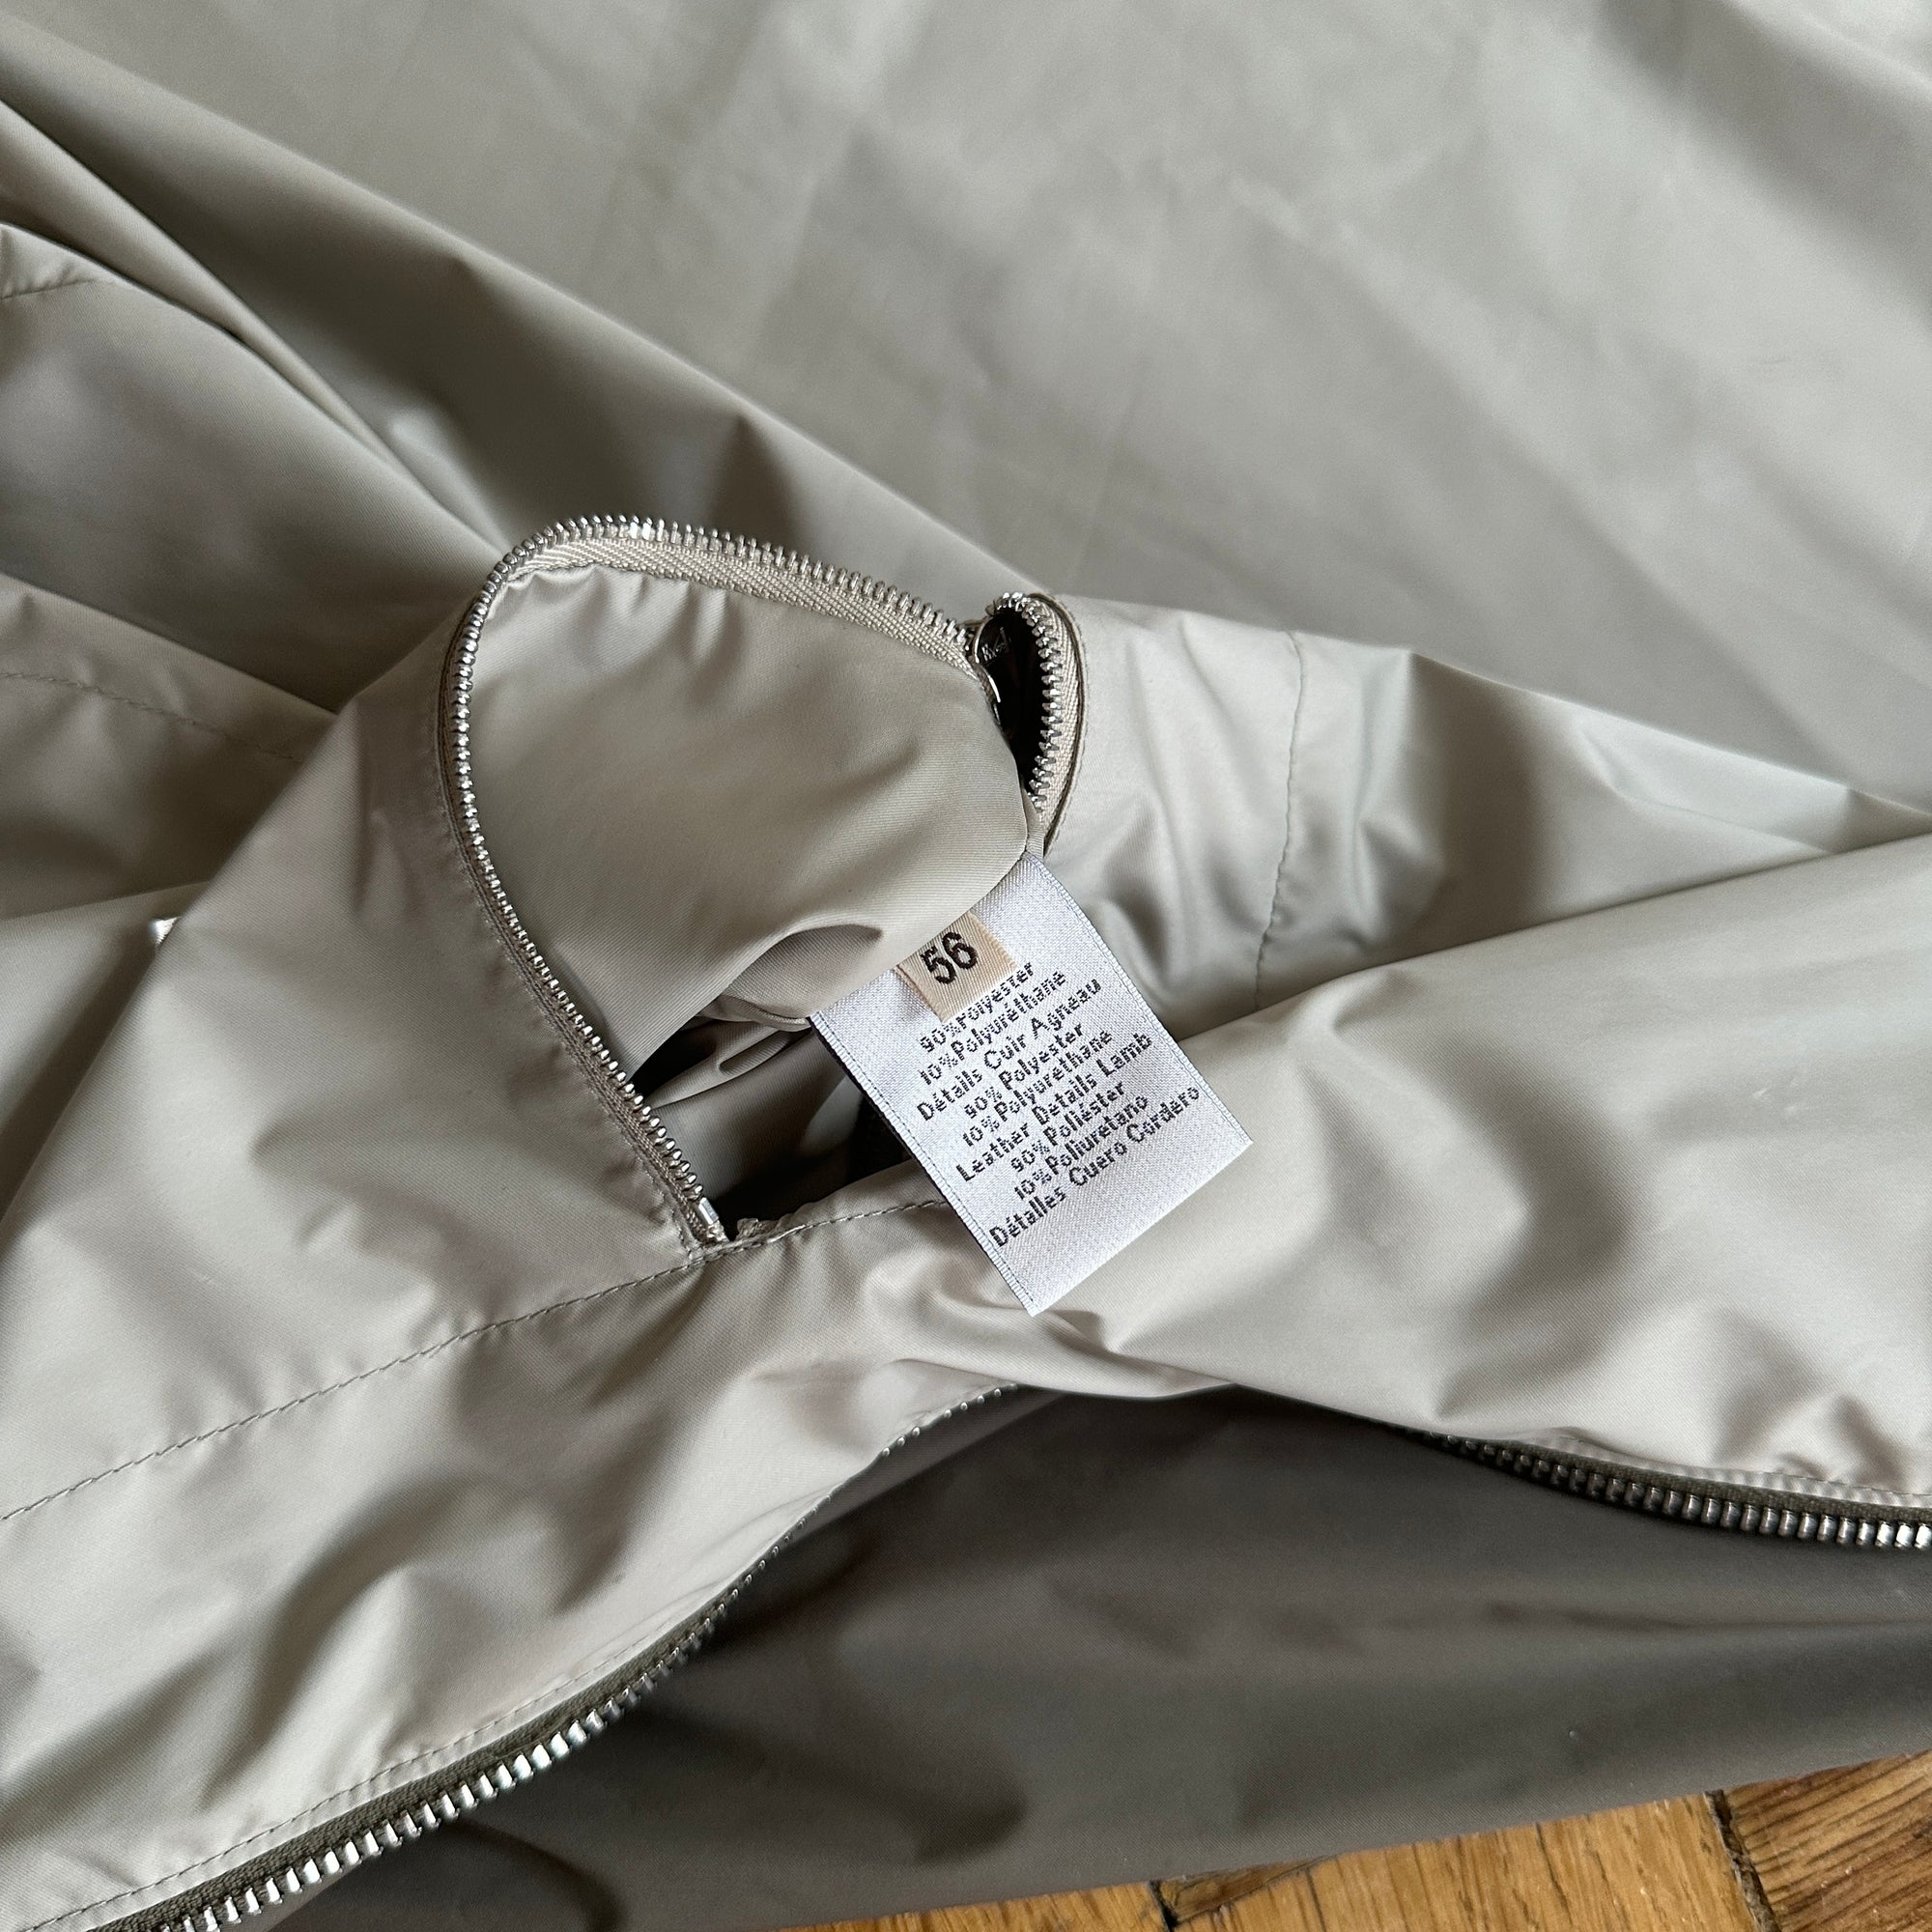 Hermès Mens Grey Windbreaker Zip Jacket